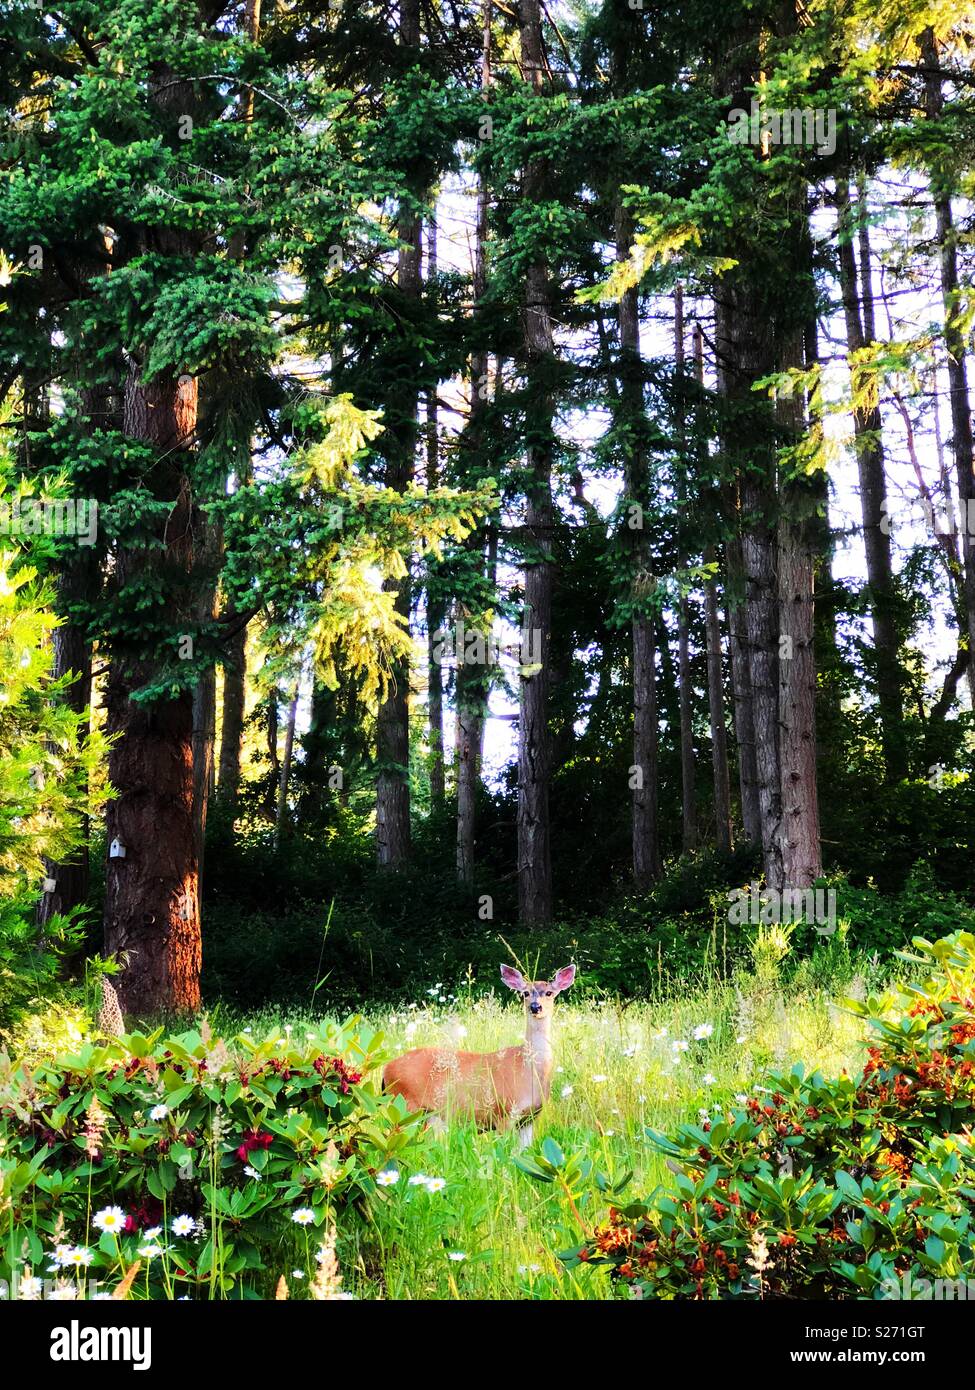 Un chevreuil dans un pré à côté d'une forêt. Banque D'Images